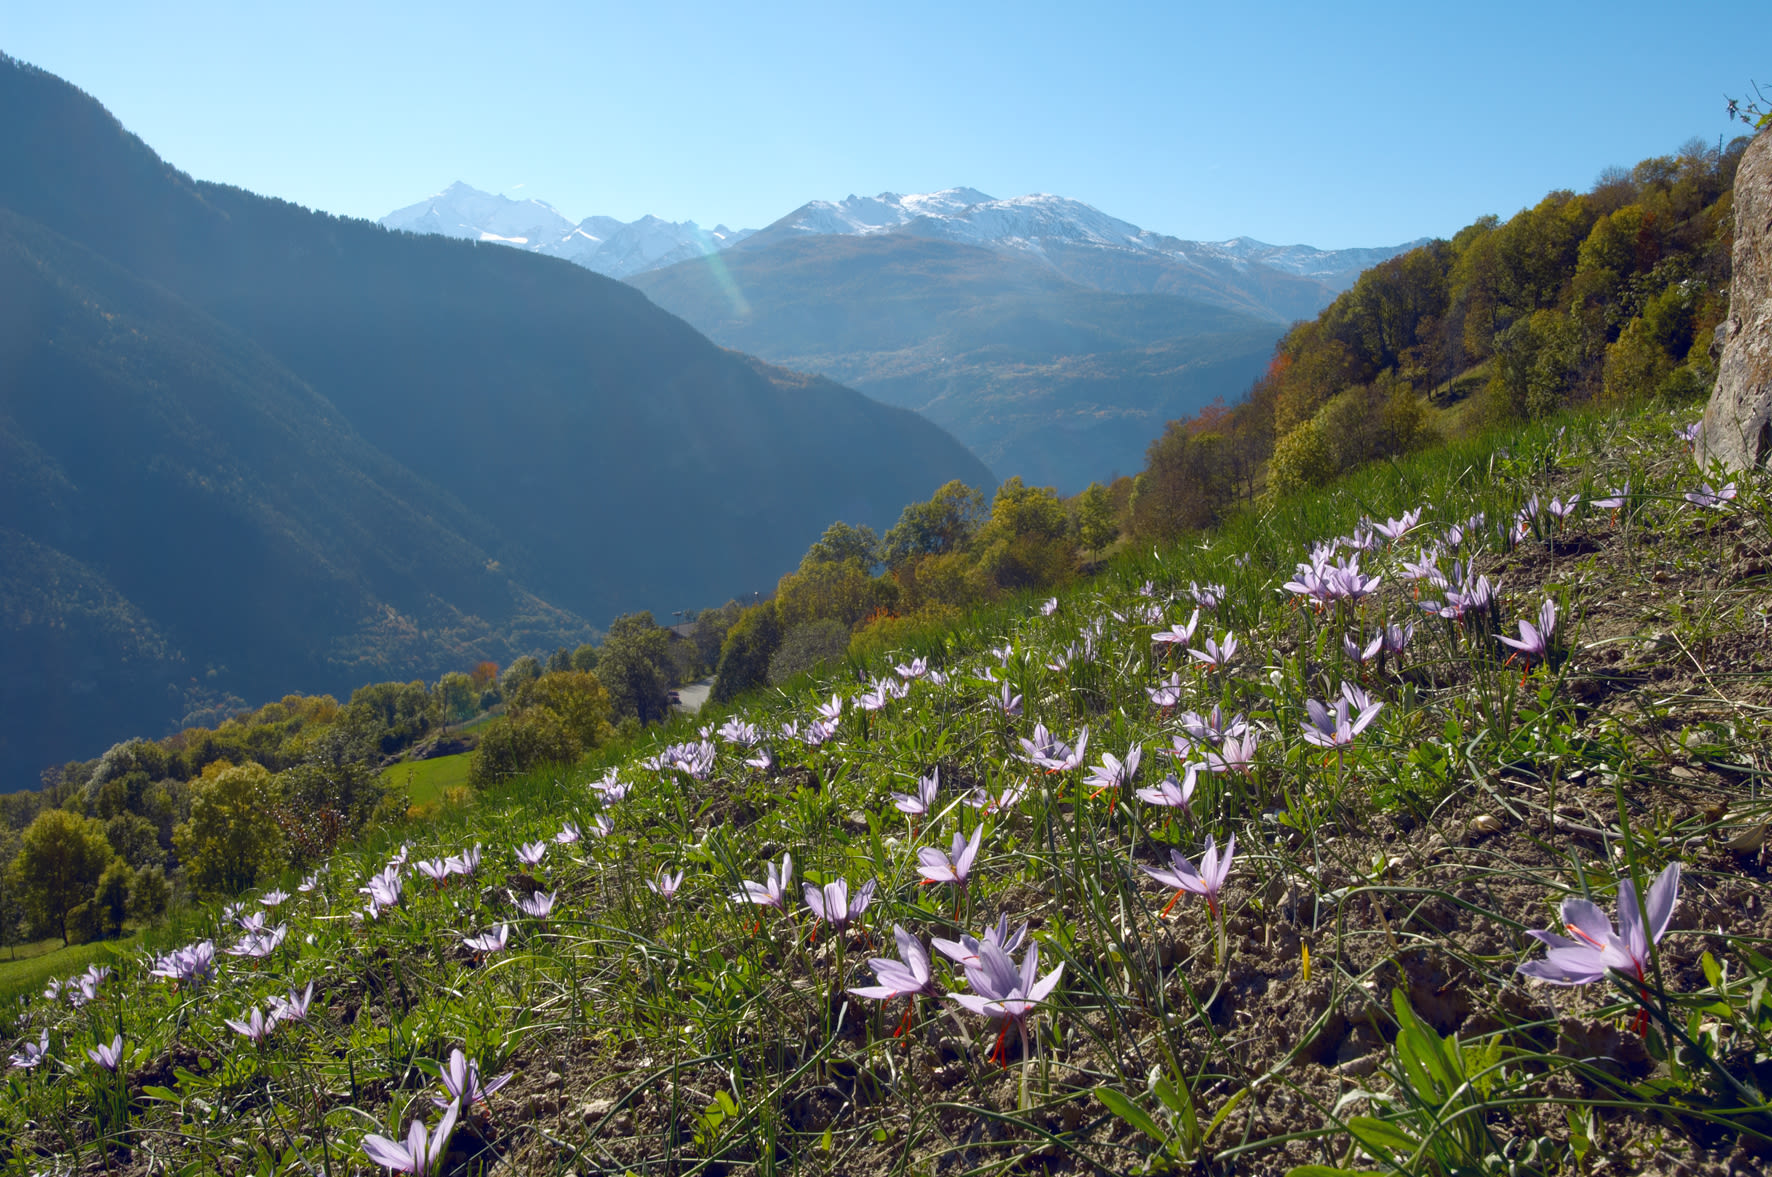 Saffron culture in Mund, Valais